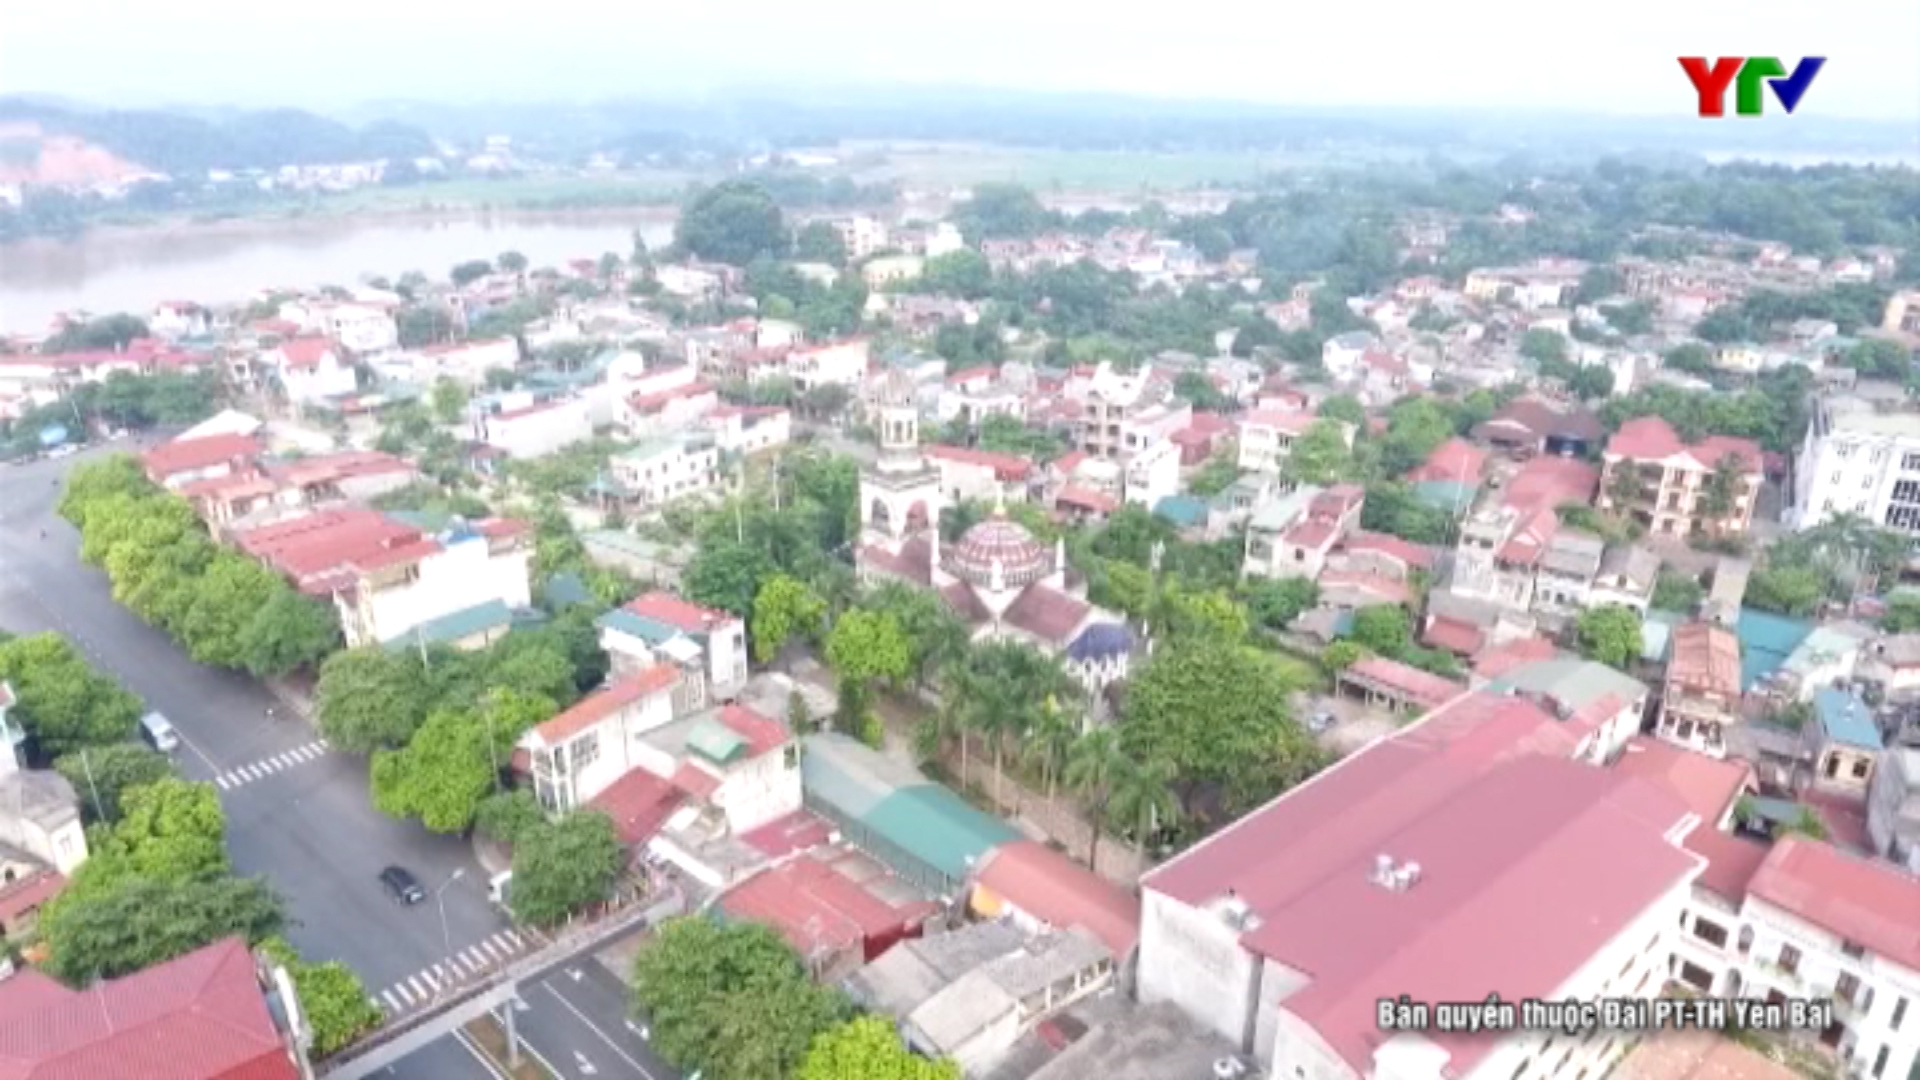 Thành phố Yên Bái - Một nhiệm kỳ ấn tượng trong công tác thu ngân sách